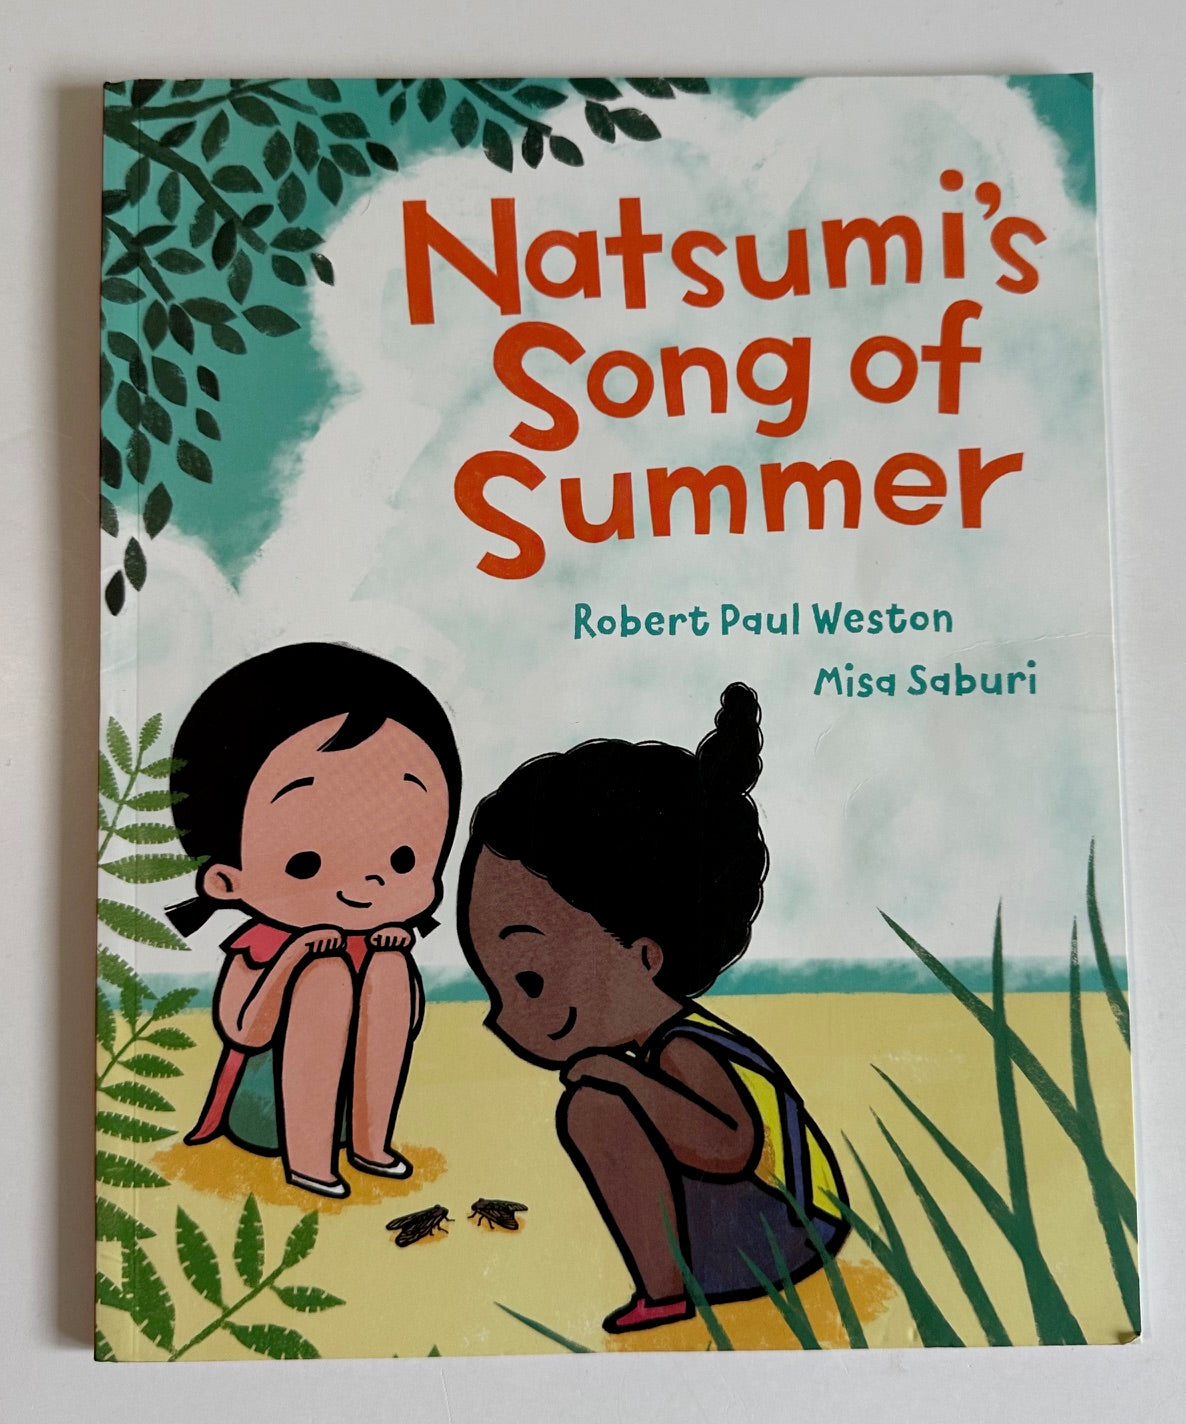 "Natsumi's Song of Summer"